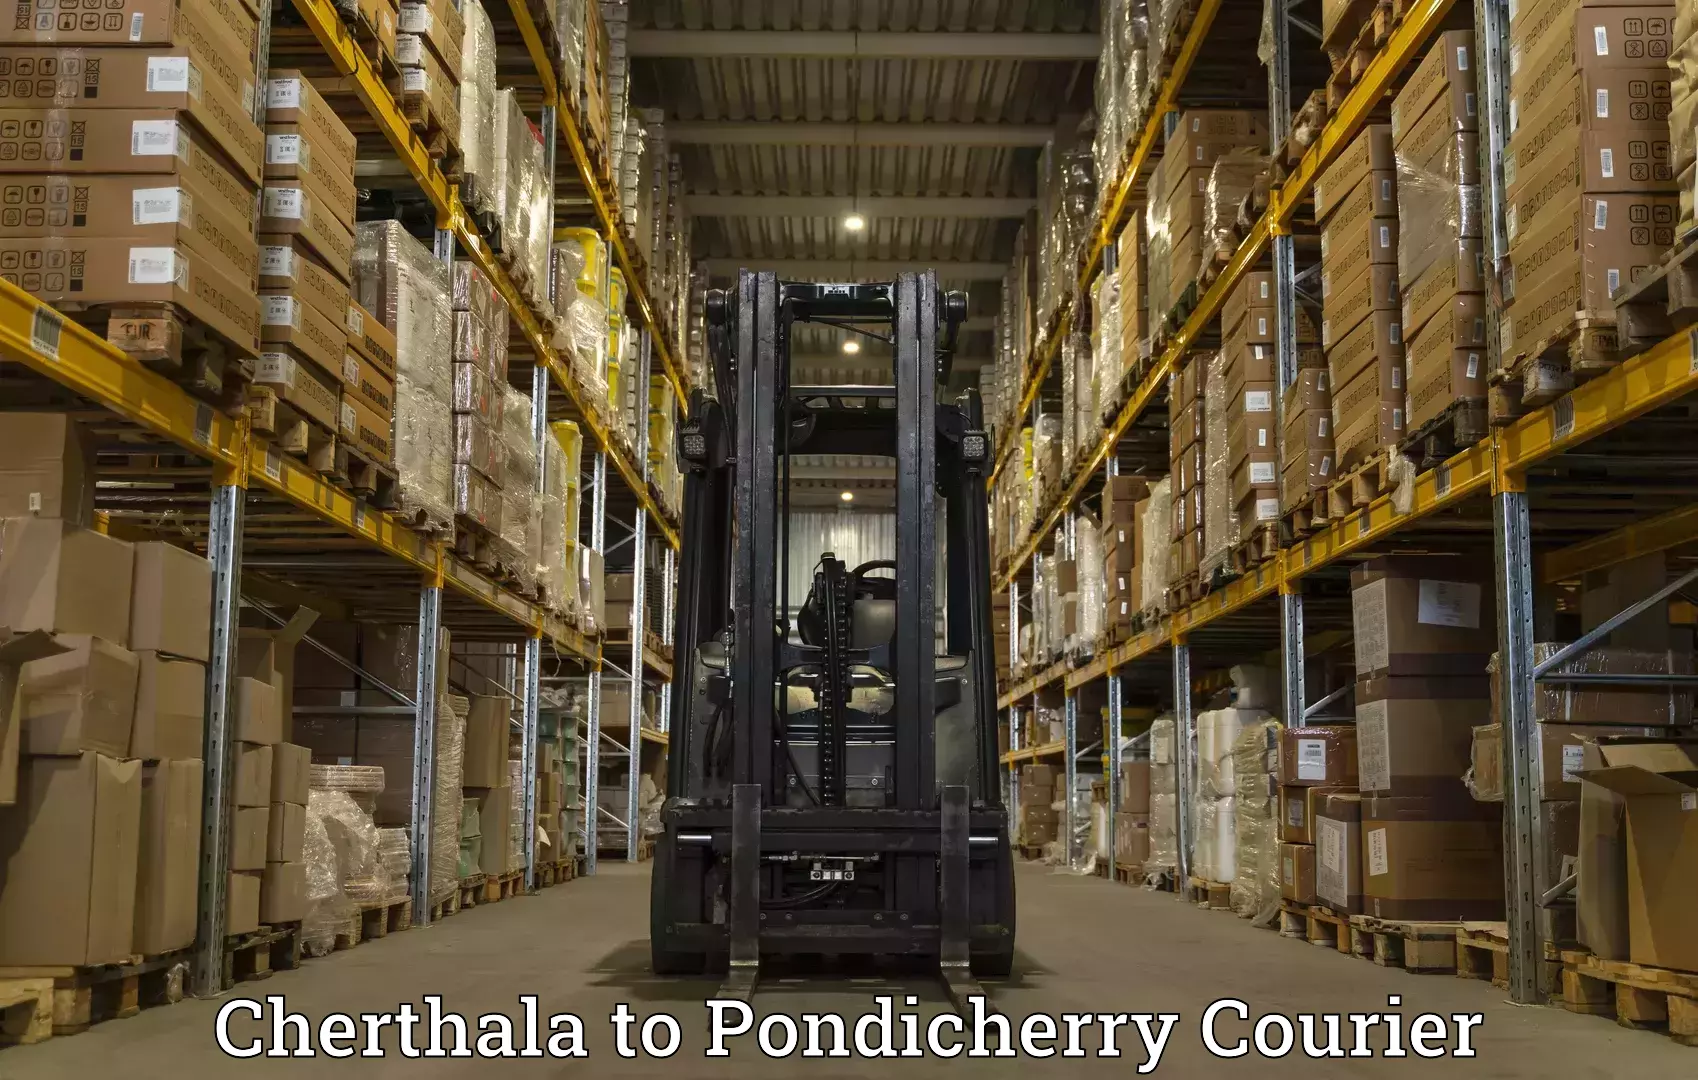 Pharmaceutical courier Cherthala to Pondicherry